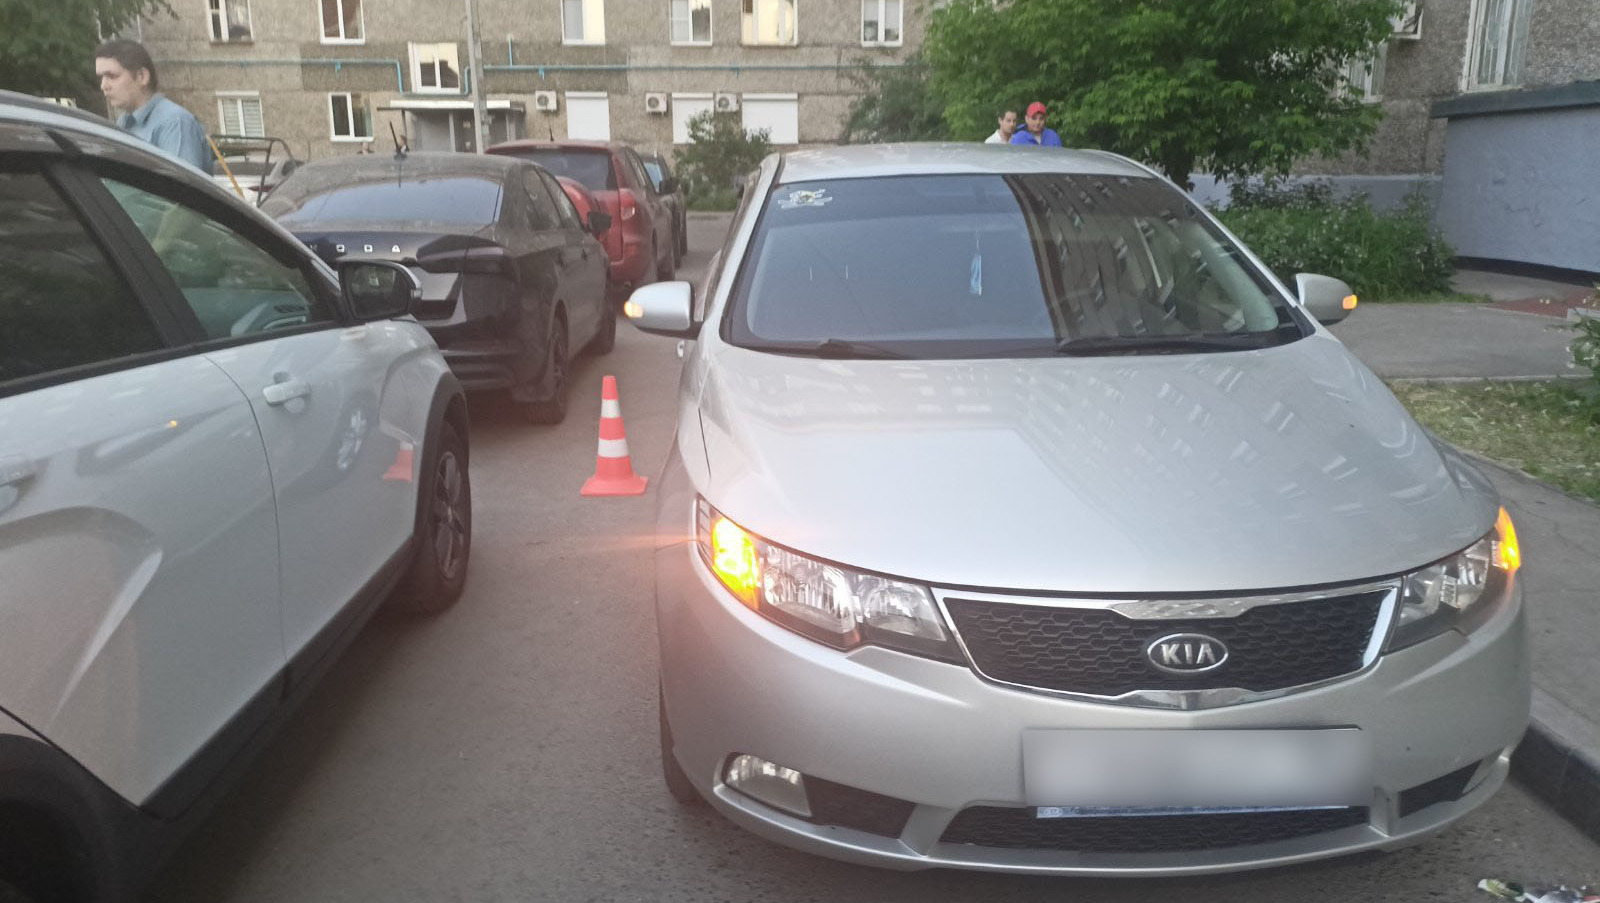 5-летний мальчик попал под колеса автомобиля в Ижевске